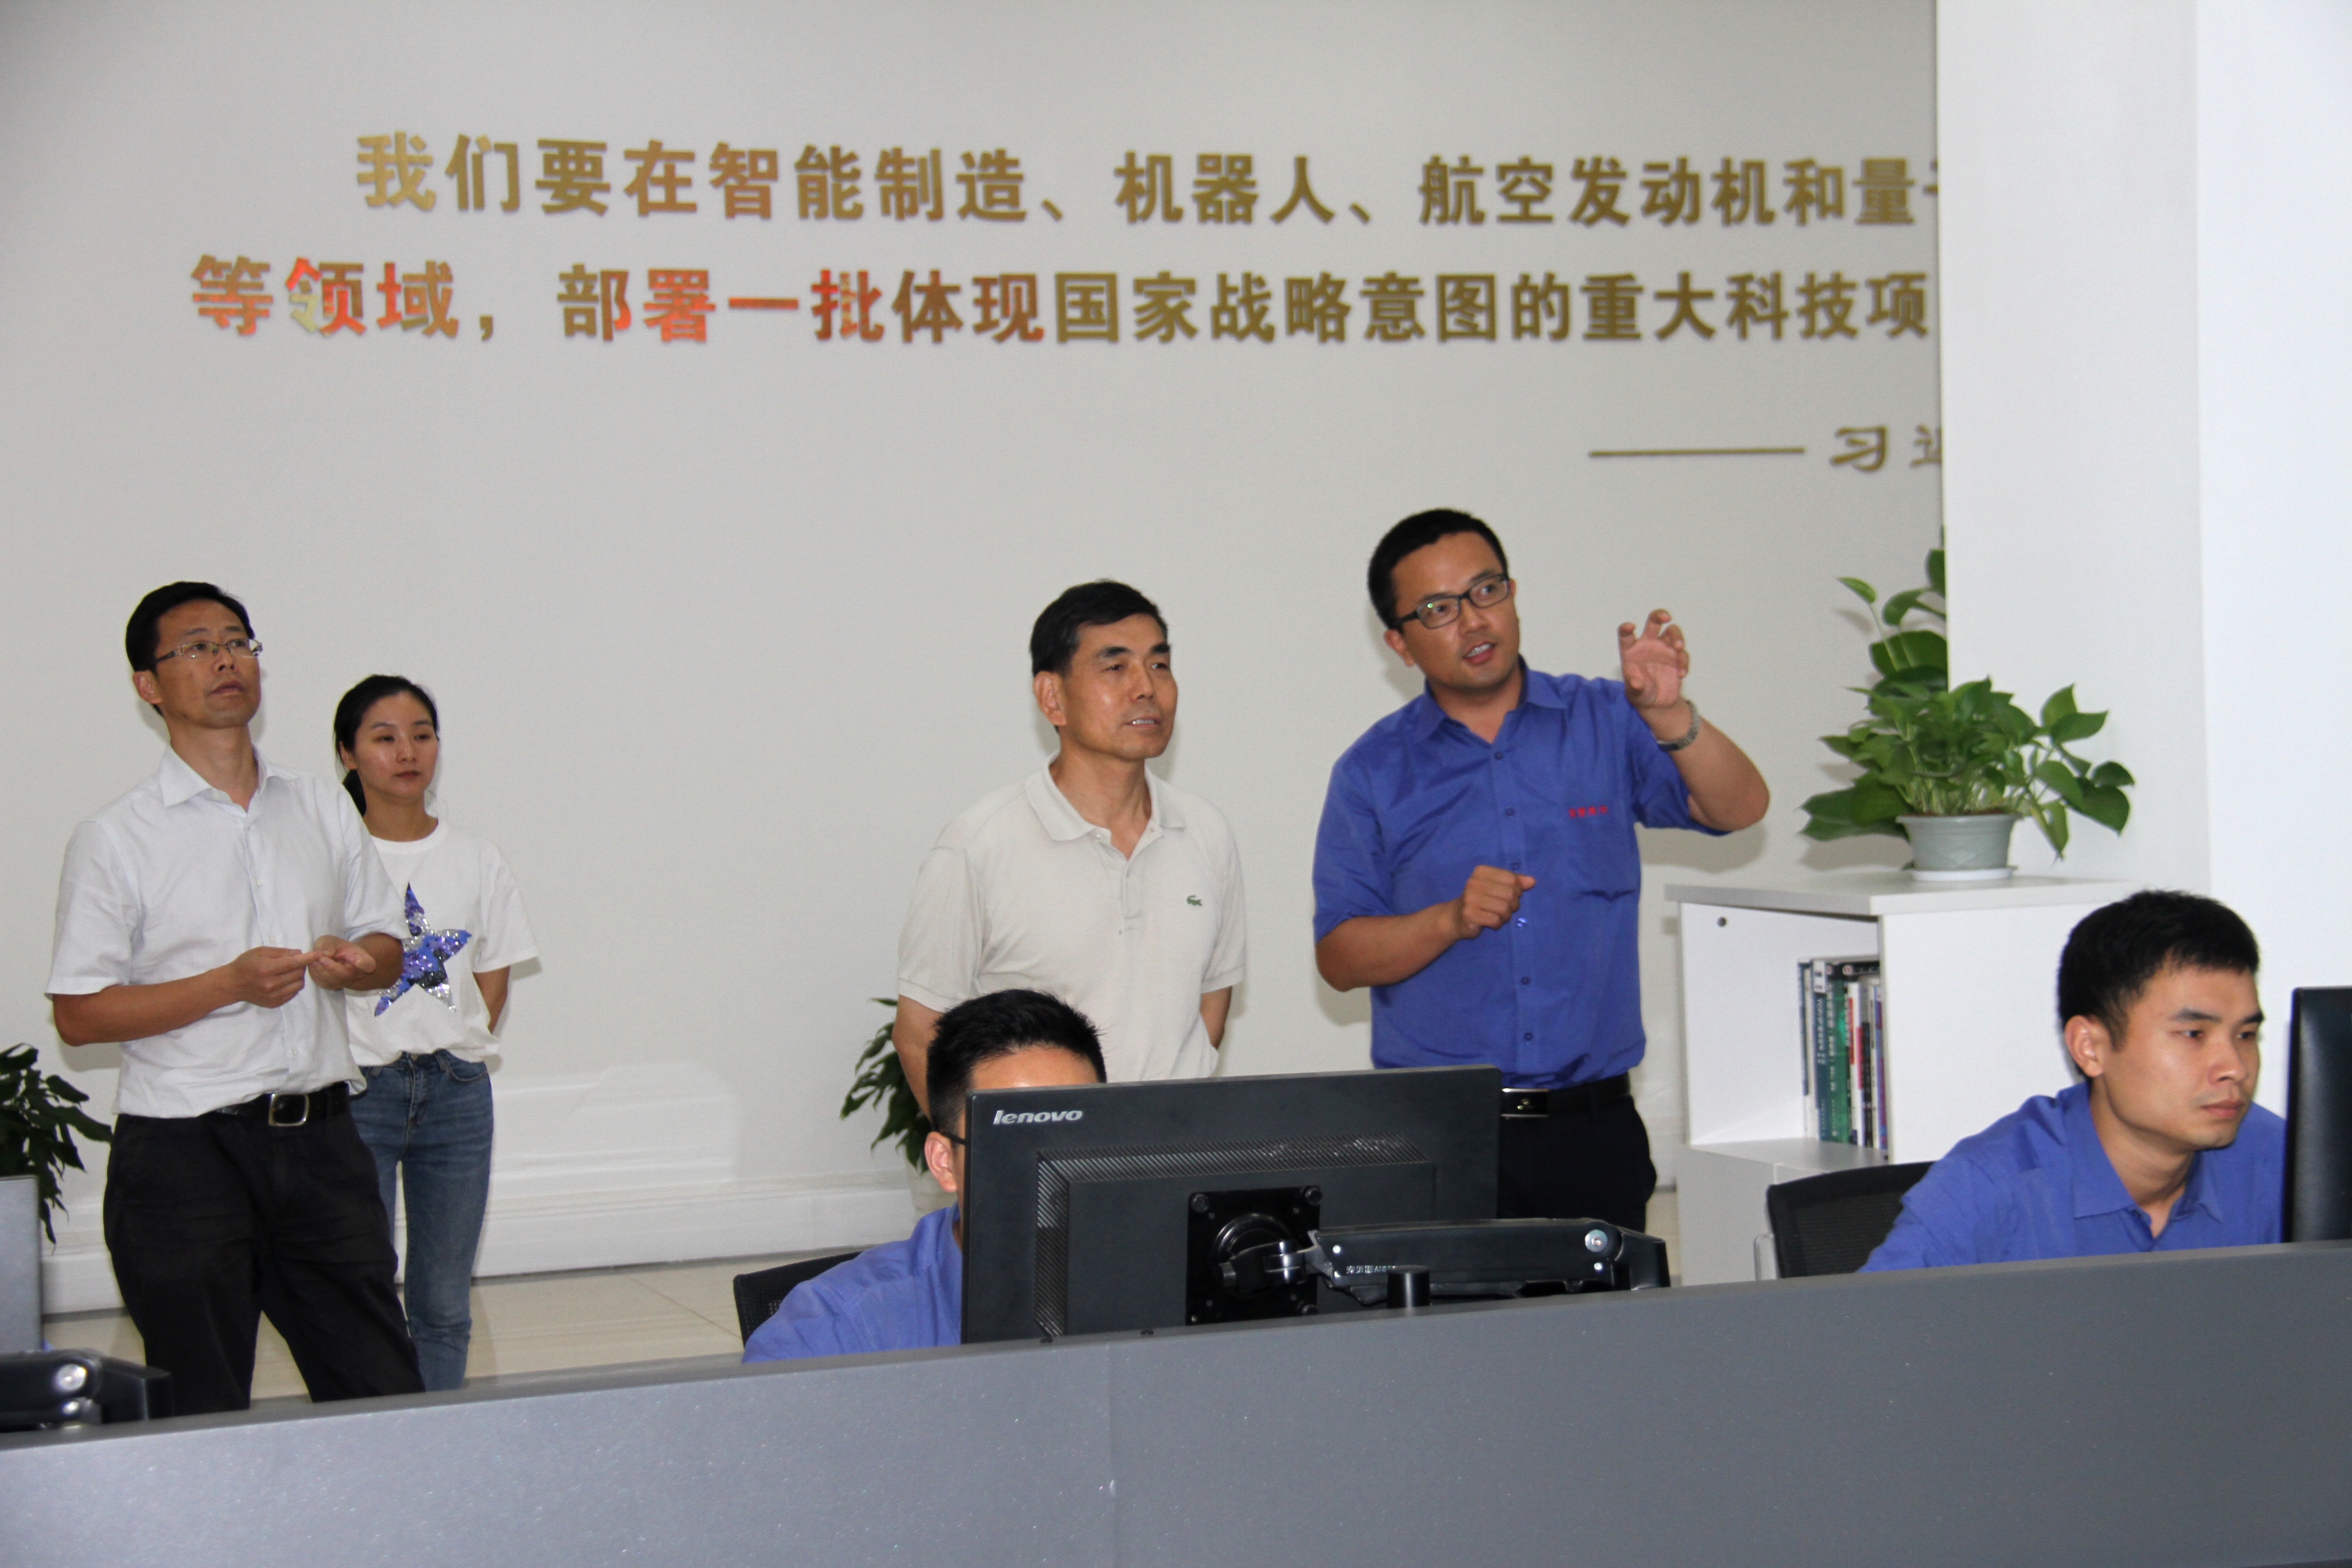 中國光彩事業指導中心調研組考察尊龍凱時航空小鎮